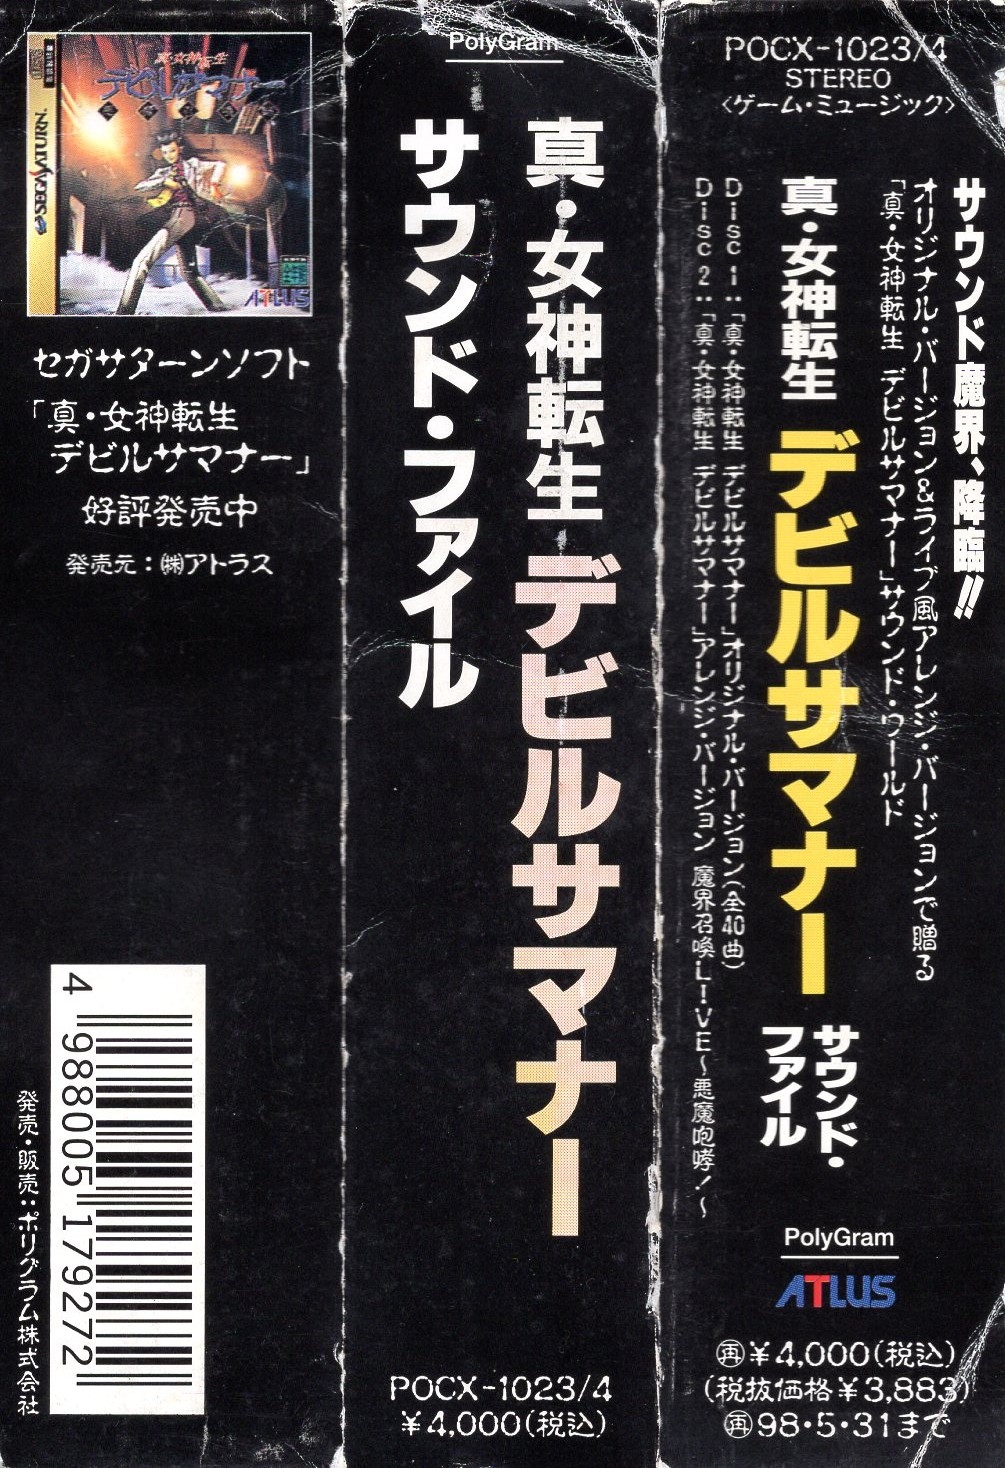 Shin Megami Tensei: Devil Summoner Sound File (1996) MP3 